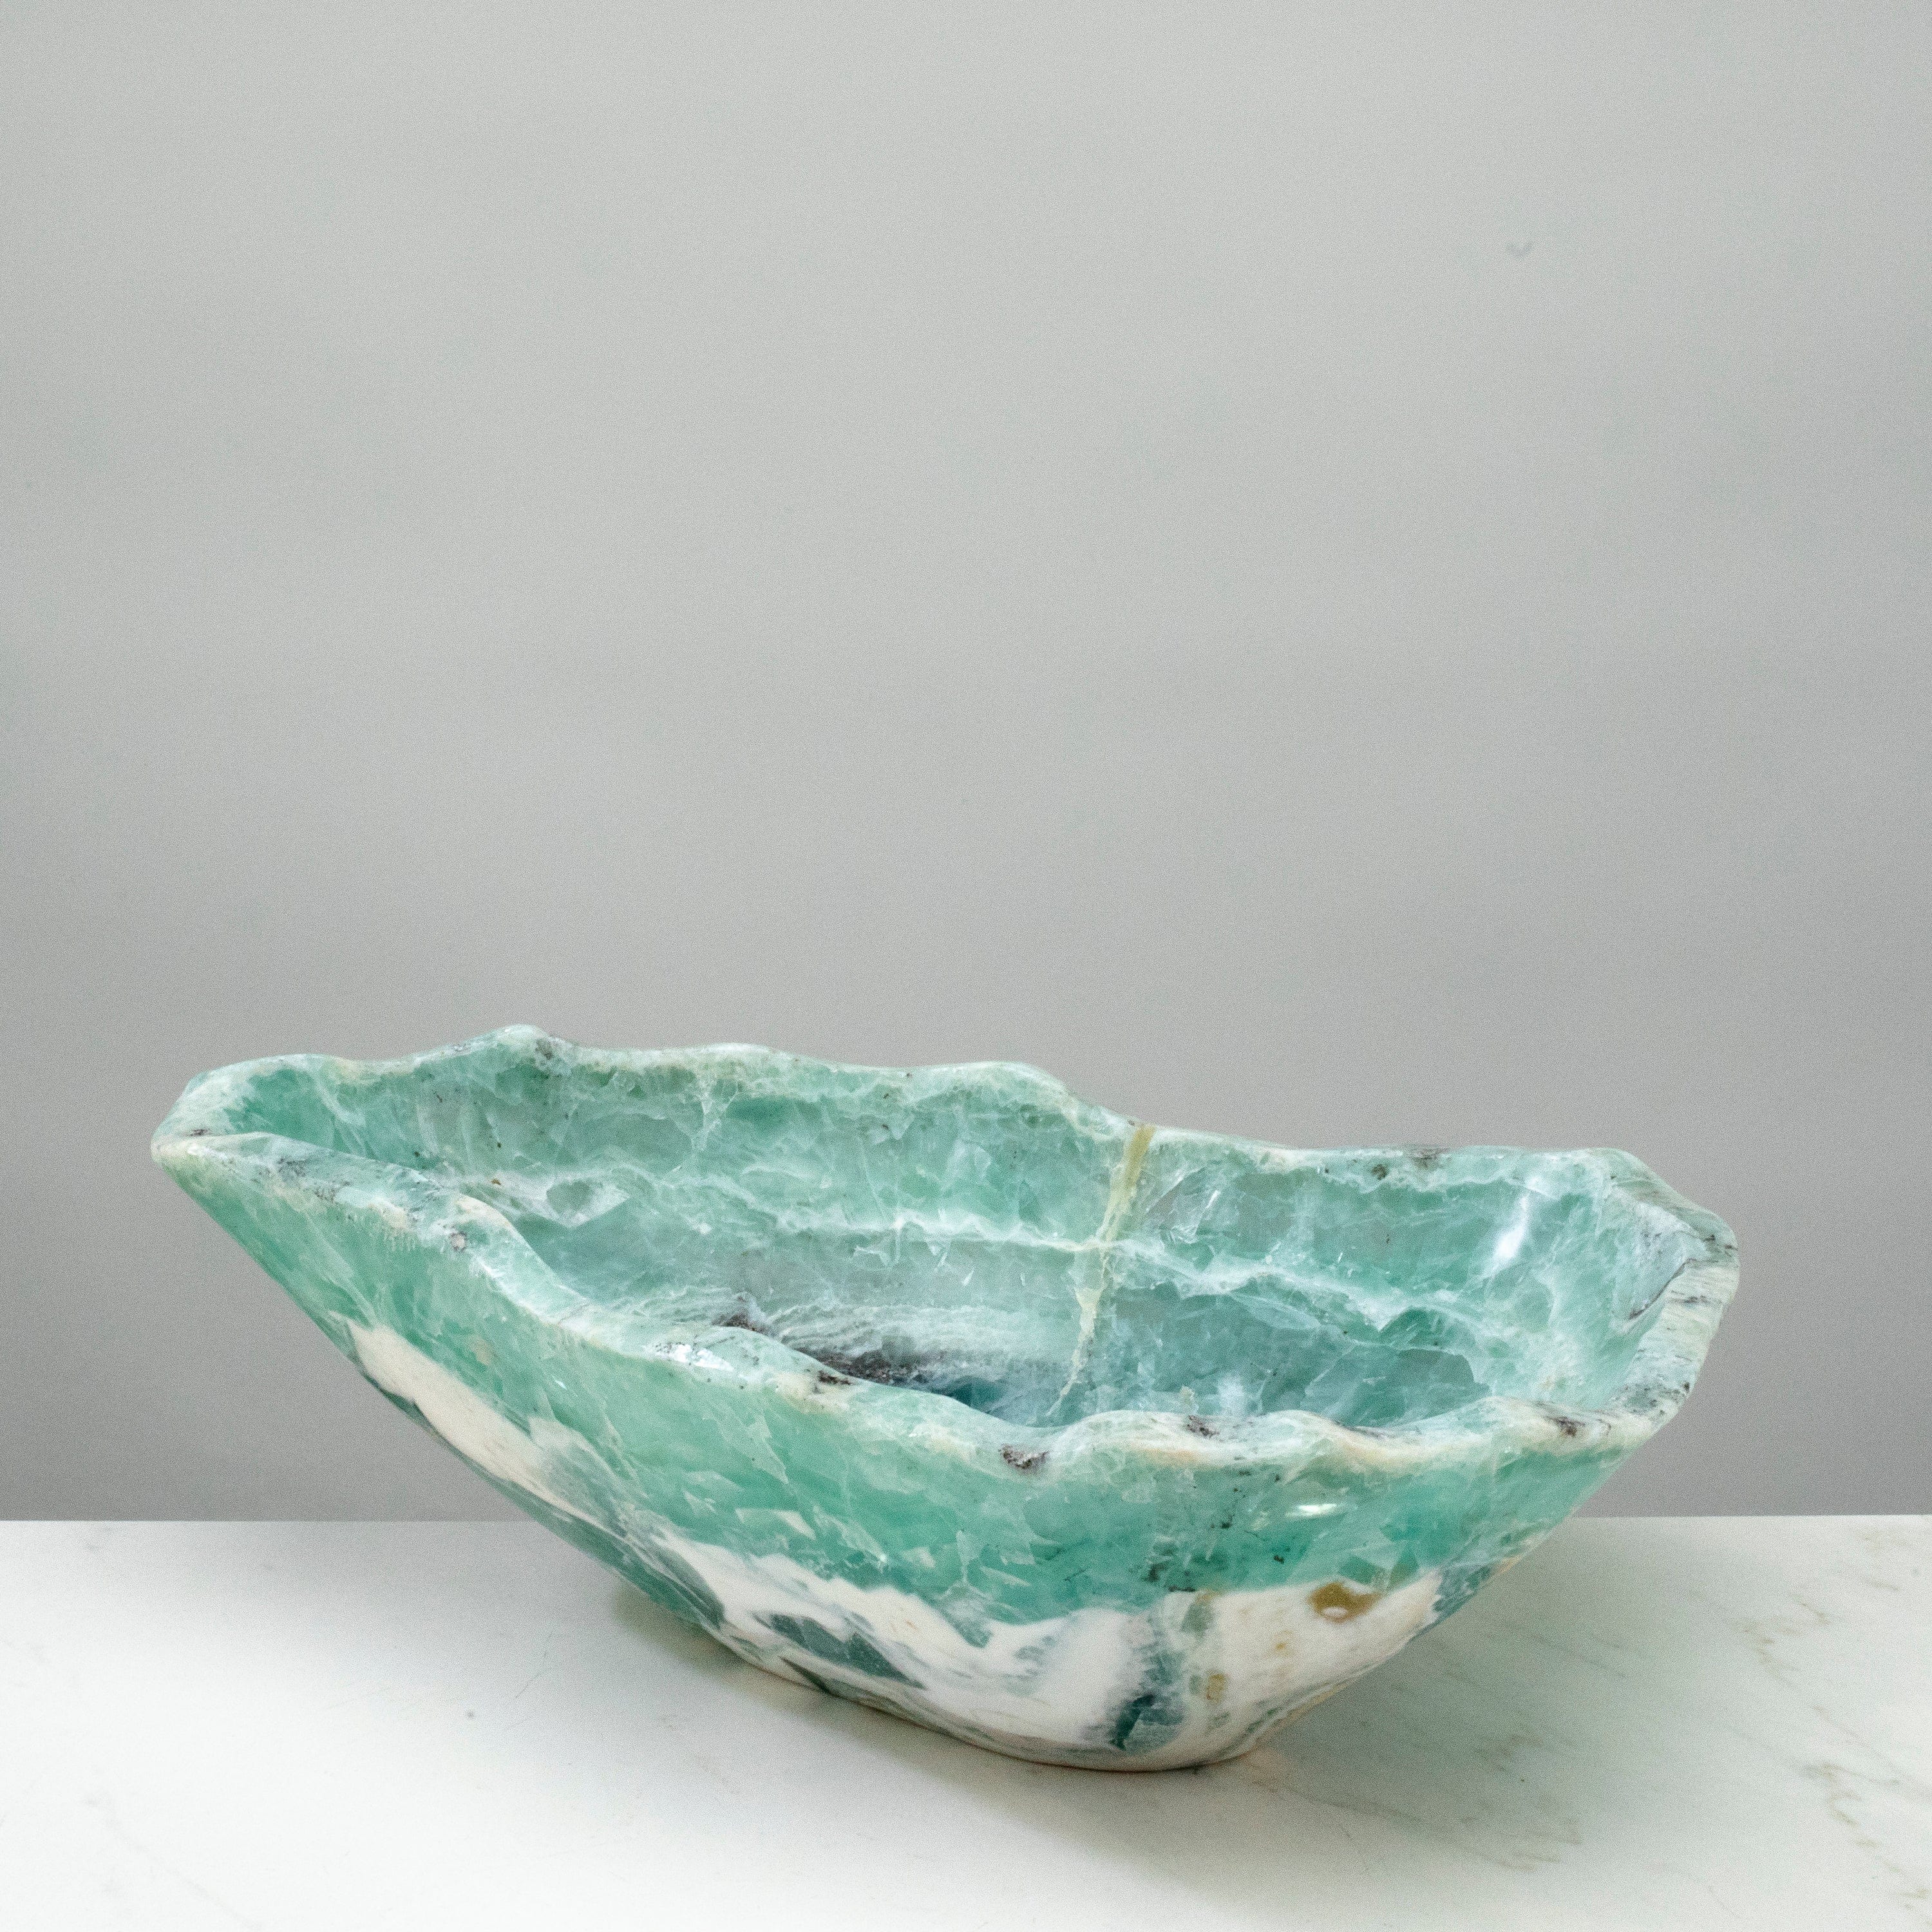 KALIFANO Gemstone Bowls Natural Blue / Green Fluorite Bowl 15" BFL7200.001